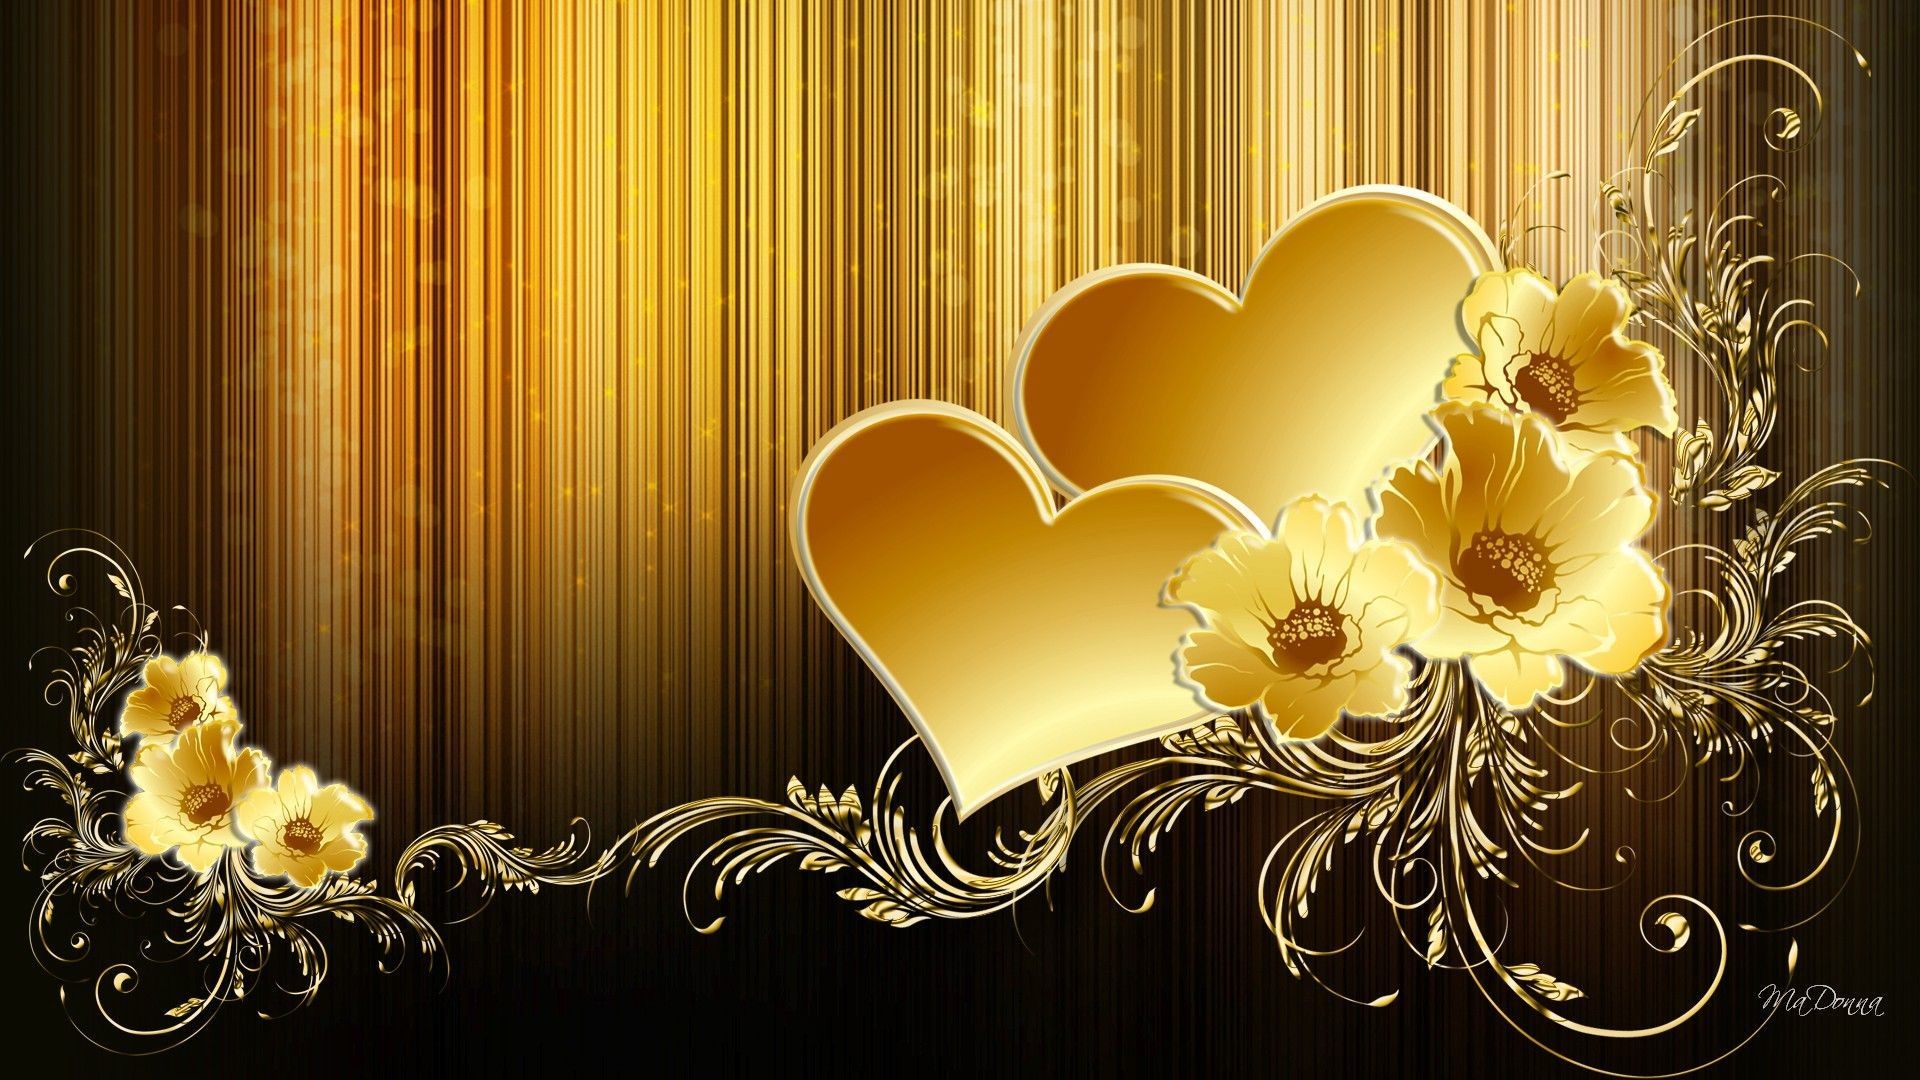 Black And Gold Wallpaper - Golden Heart Wallpaper Hd - HD Wallpaper 